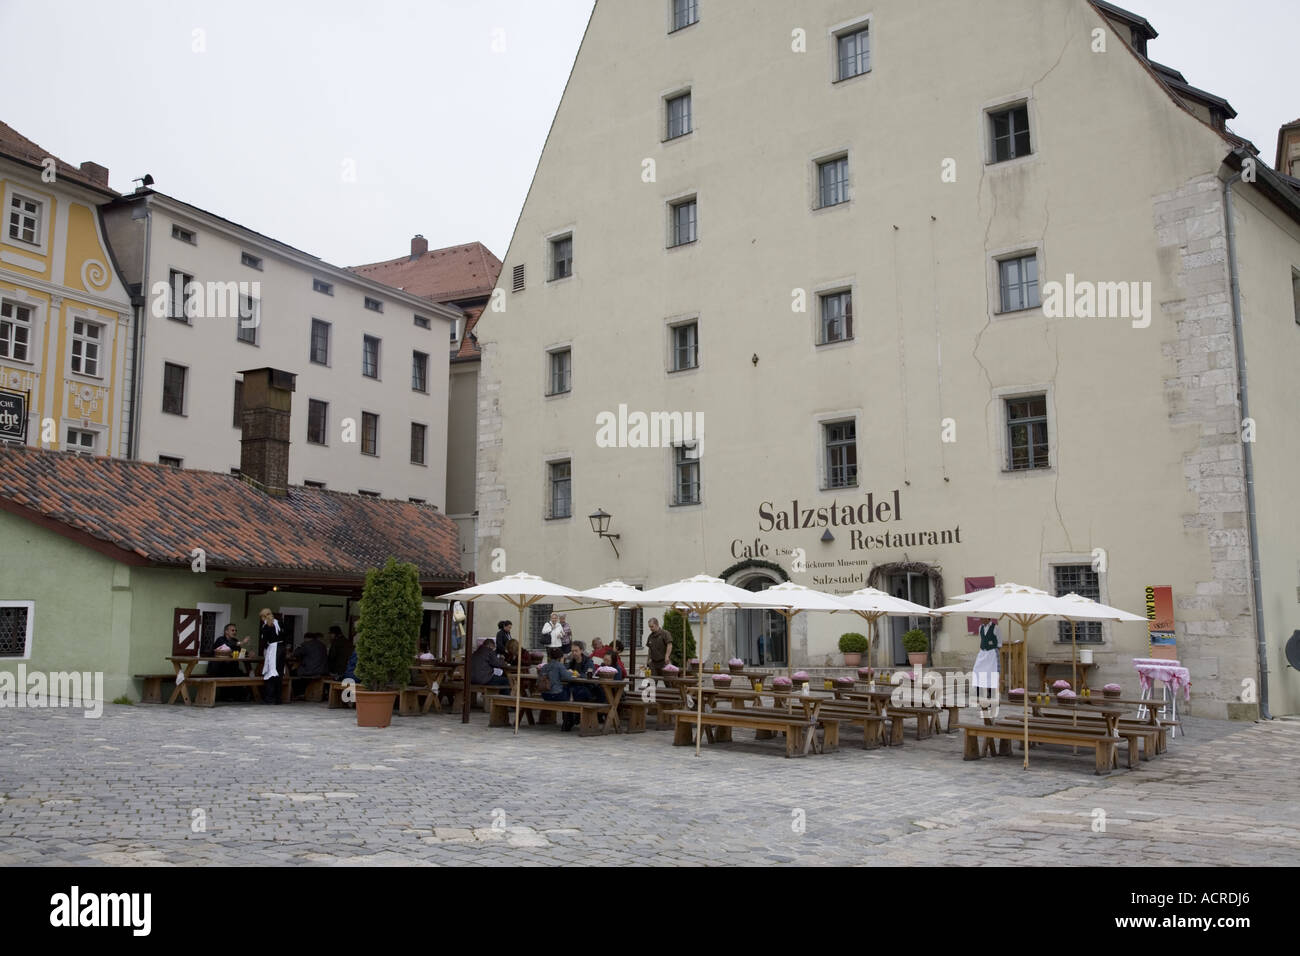 Cafetería y Restaurante Salzstadel, Regensburg, Alemania Foto de stock